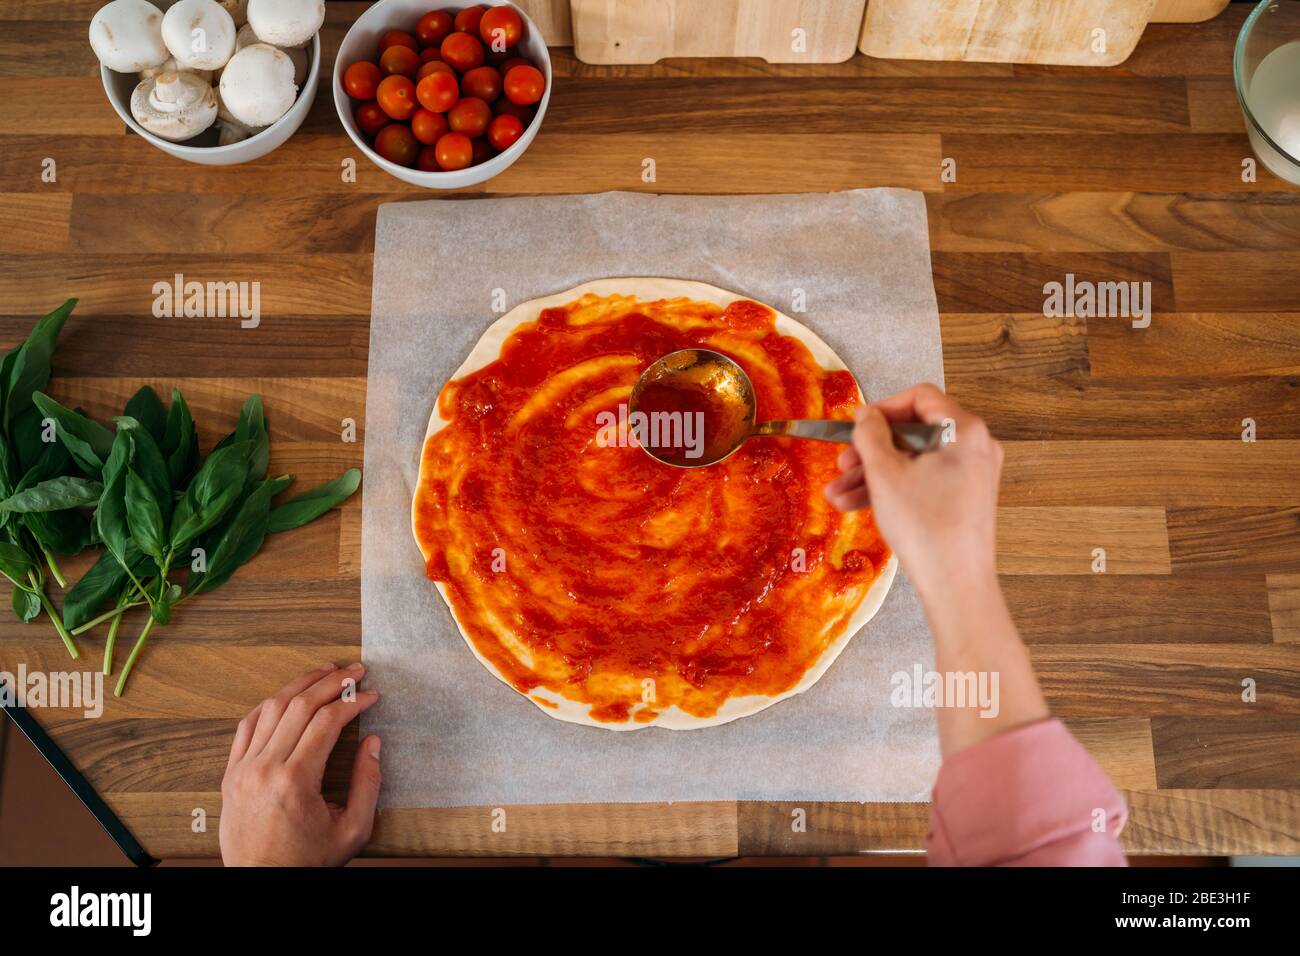 Draufsicht auf die Hände einer Frau, die Tomatensauce zu einem Pizzateig auf einer Holzarbeitspfläche hinzufügt. Roher Teig für die Pizzazubereitung mit Zutat: Tomatensauce, m Stockfoto